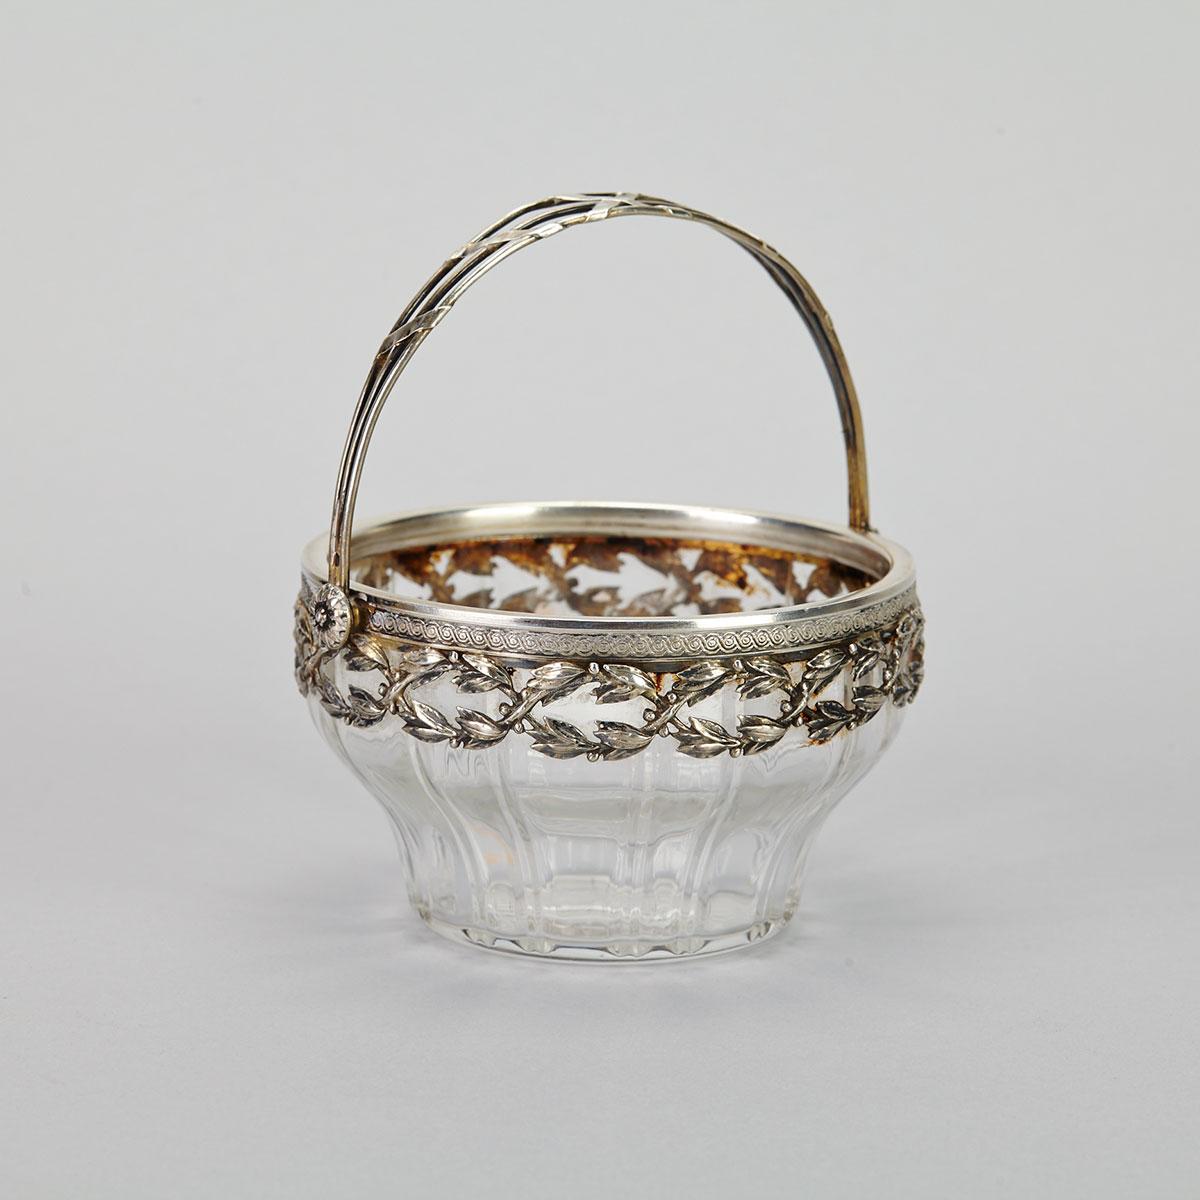 French Silver Mounted Cut Glass Sugar Basket, Henri Lapeyre, Paris, c.1900